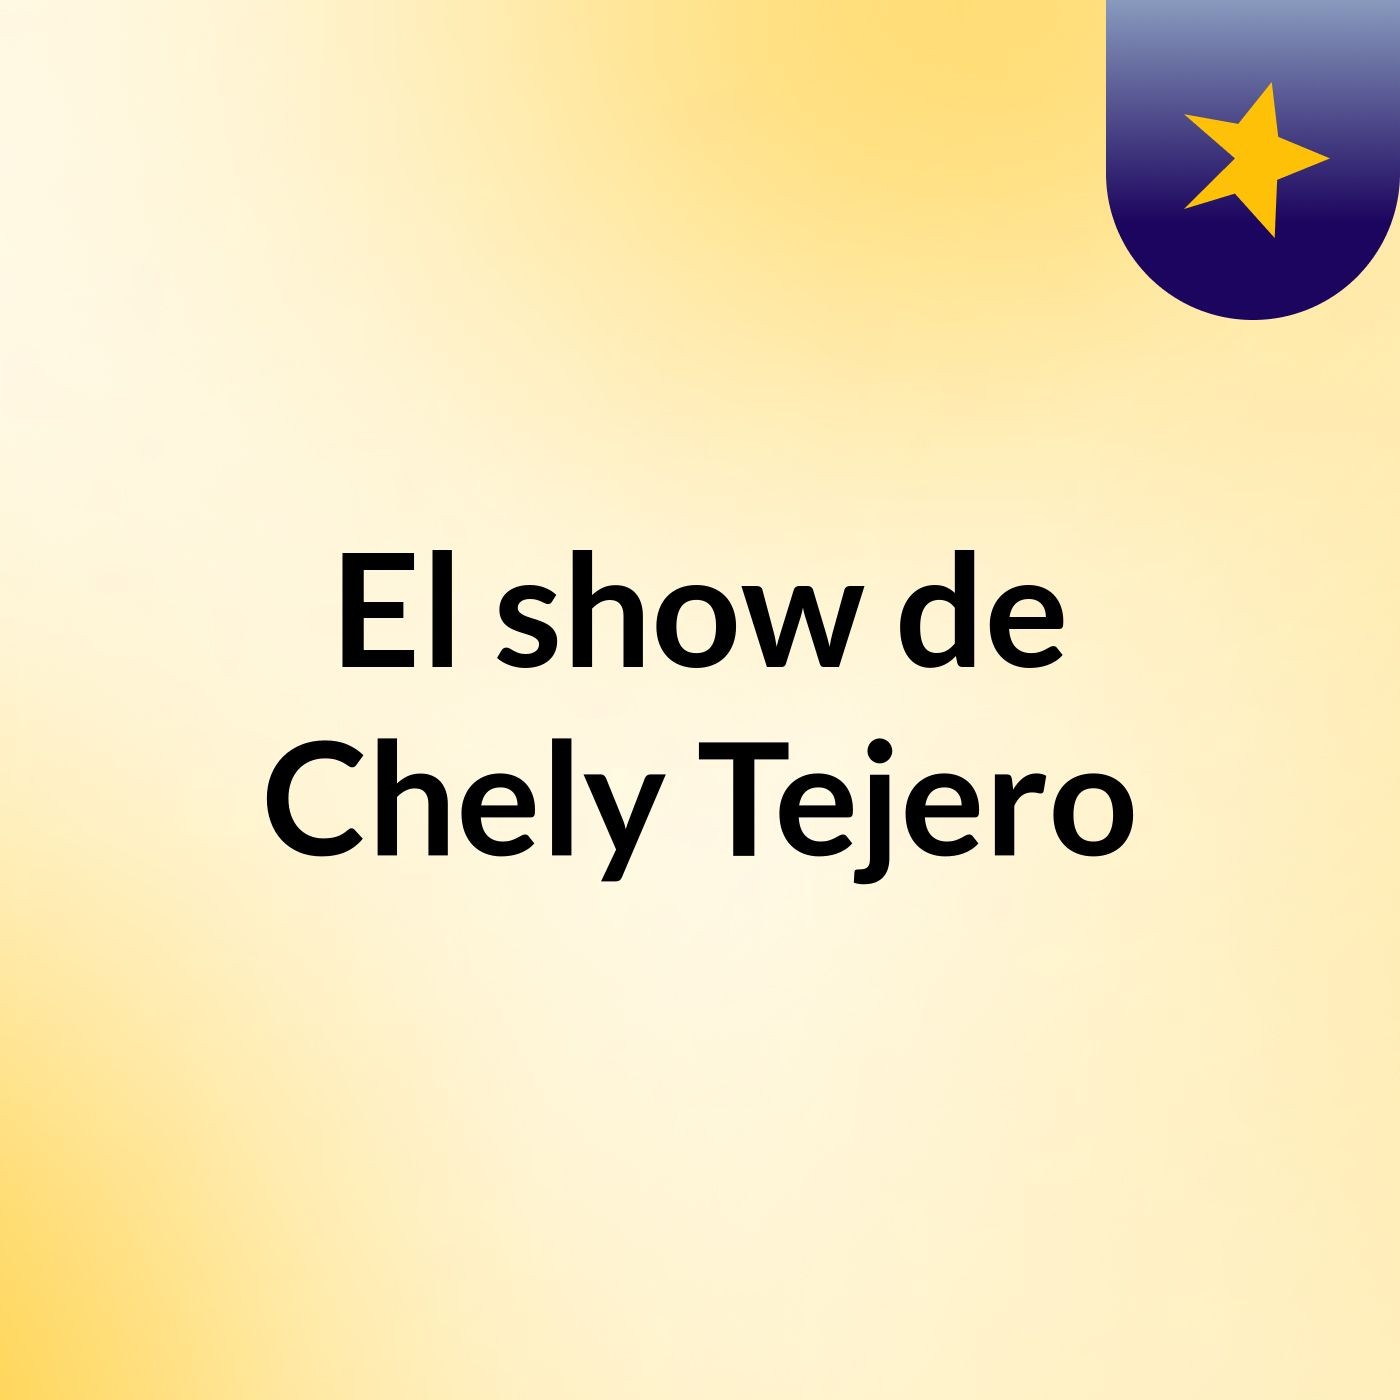 El show de Chely Tejero